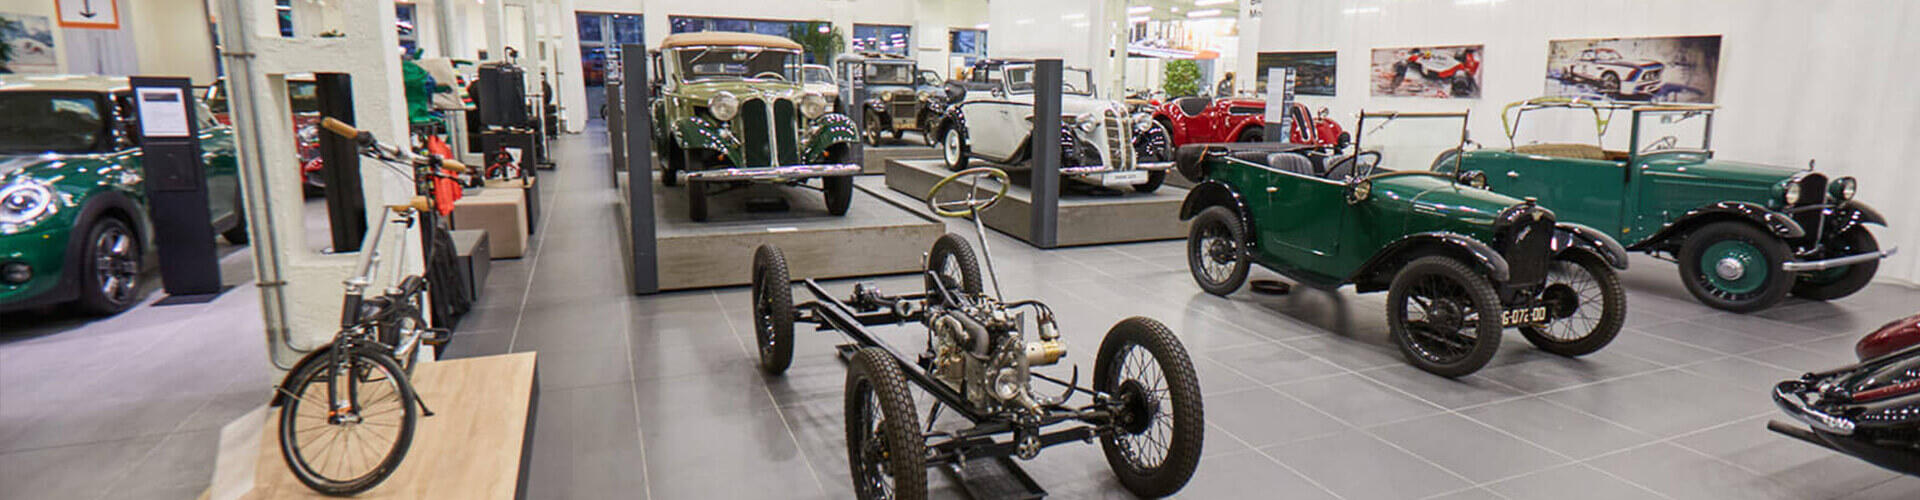 Muzeum historických vozů BMW Renocar Brno-Slatina. Magazín KULT* Brno